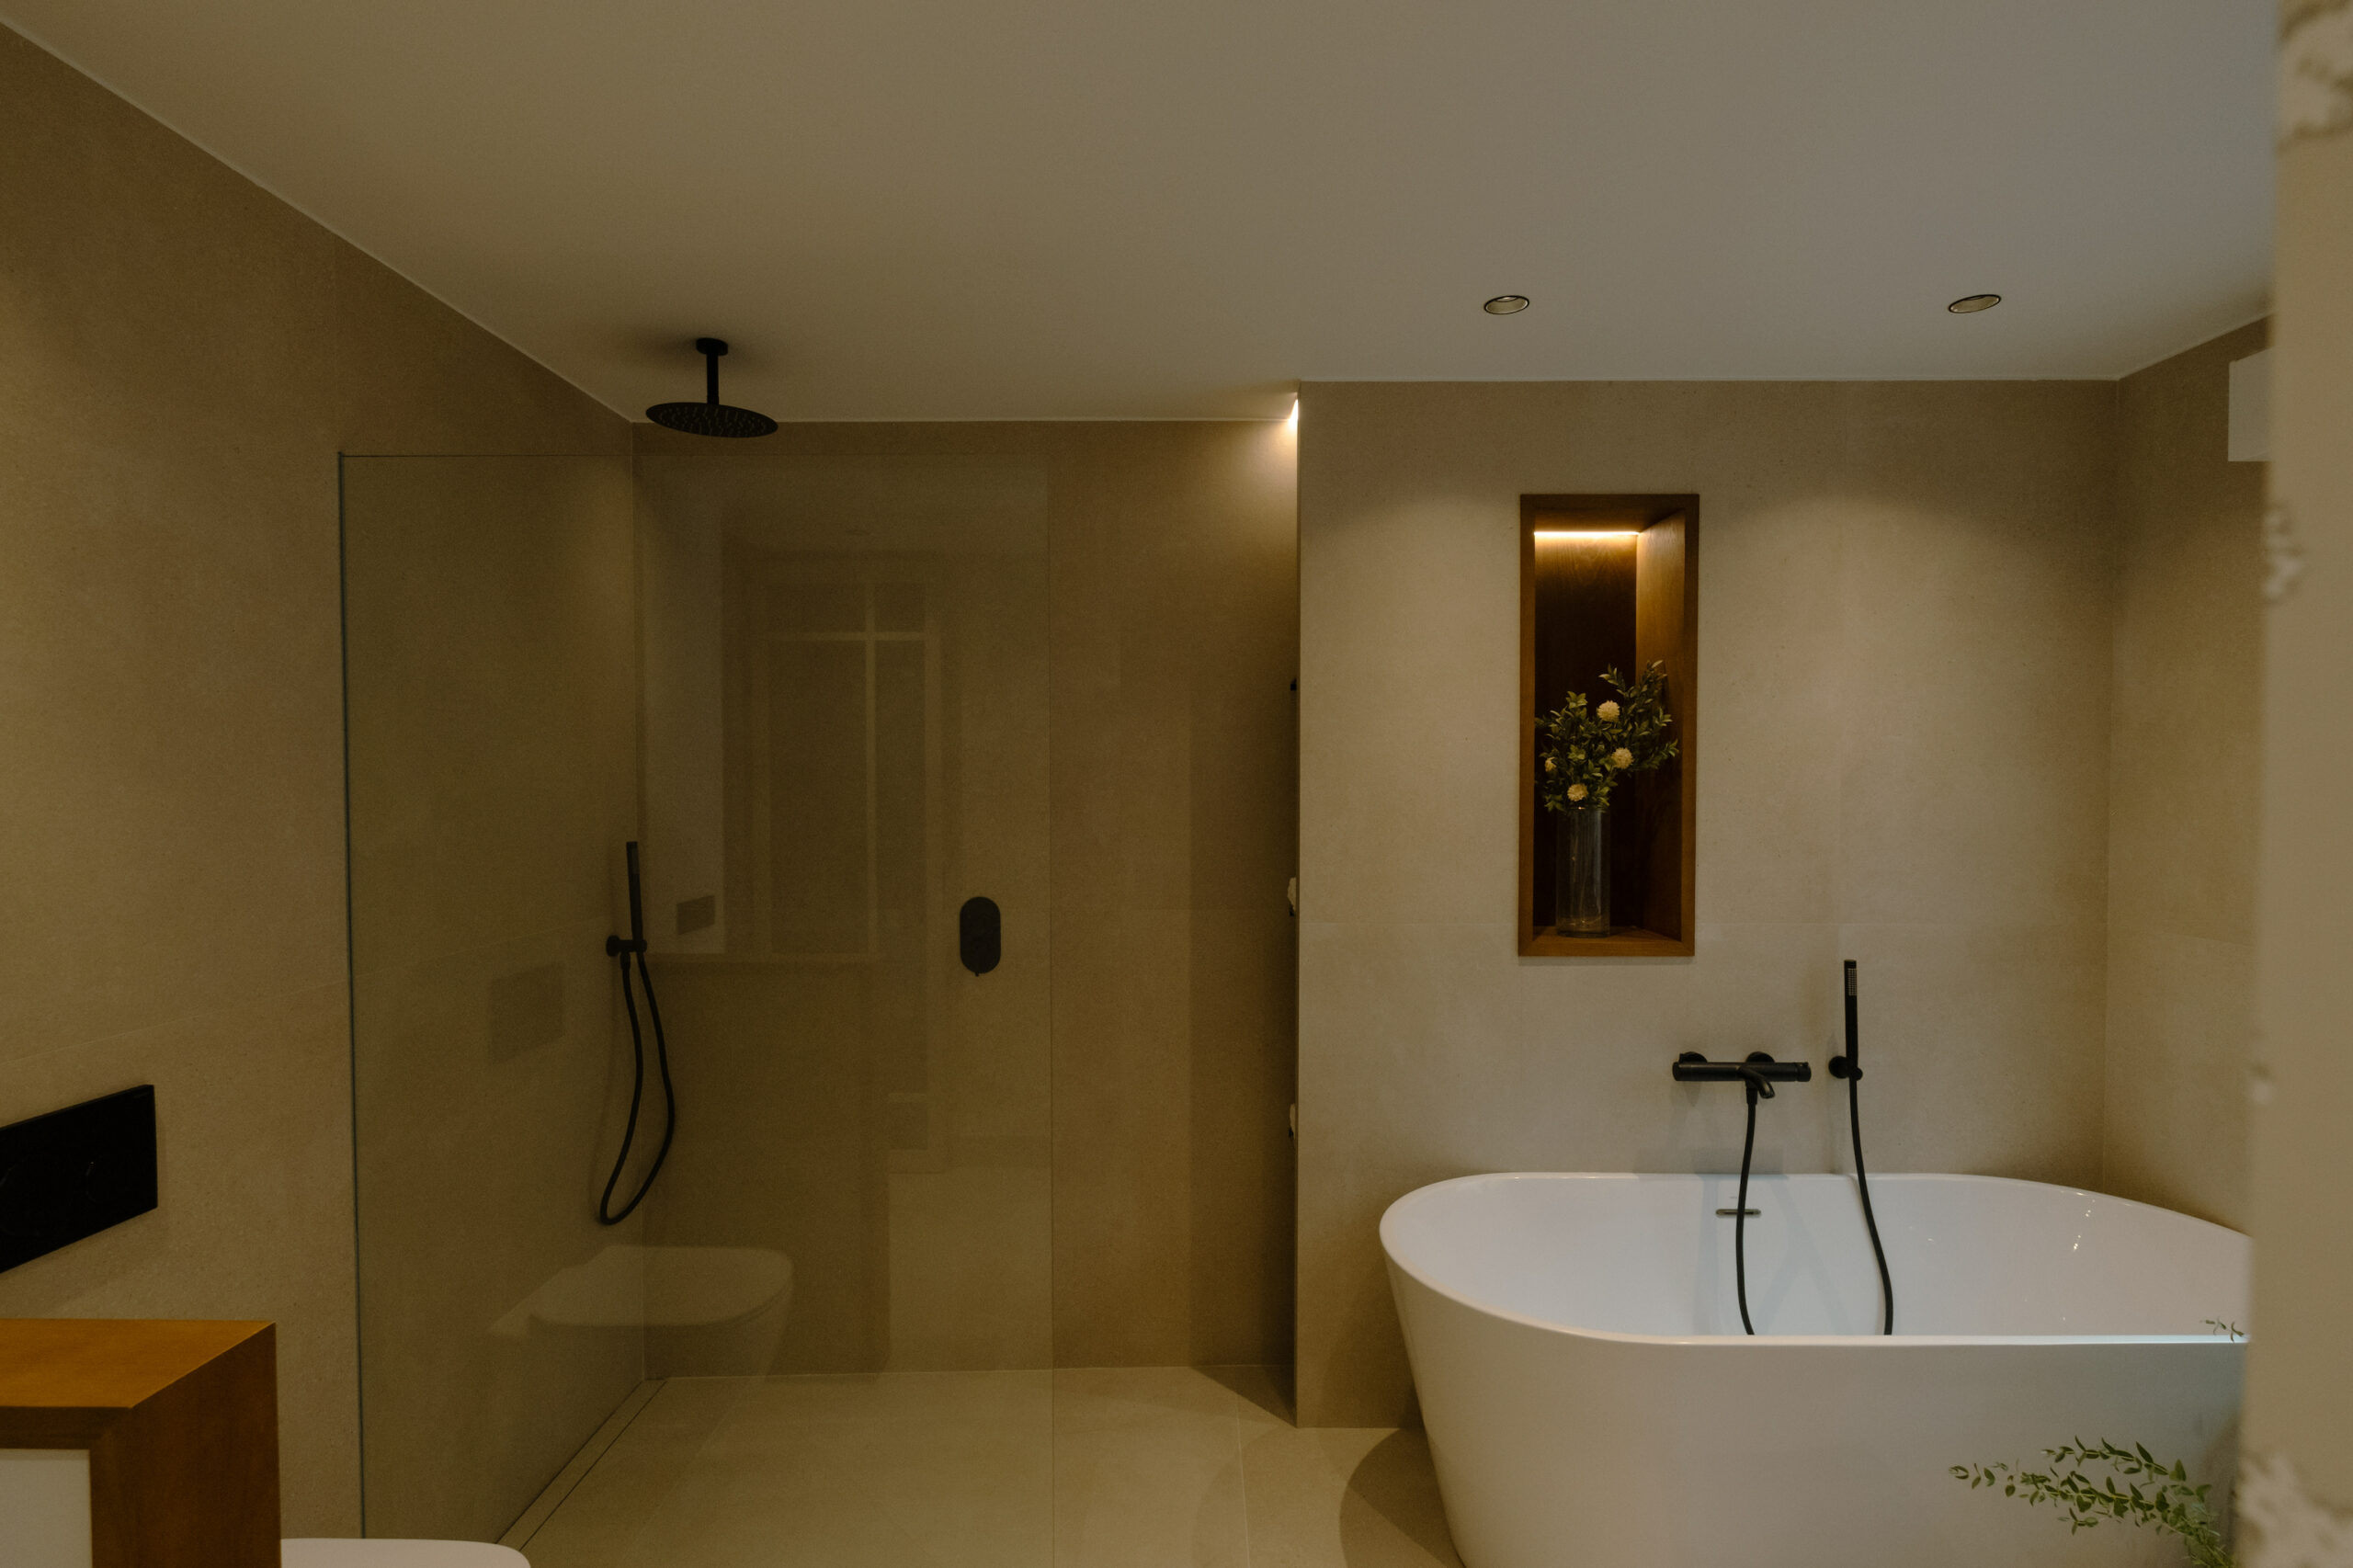 baño-principal-moderno-y-minimalista-decoracion-ideas-johntelobusca-cjr